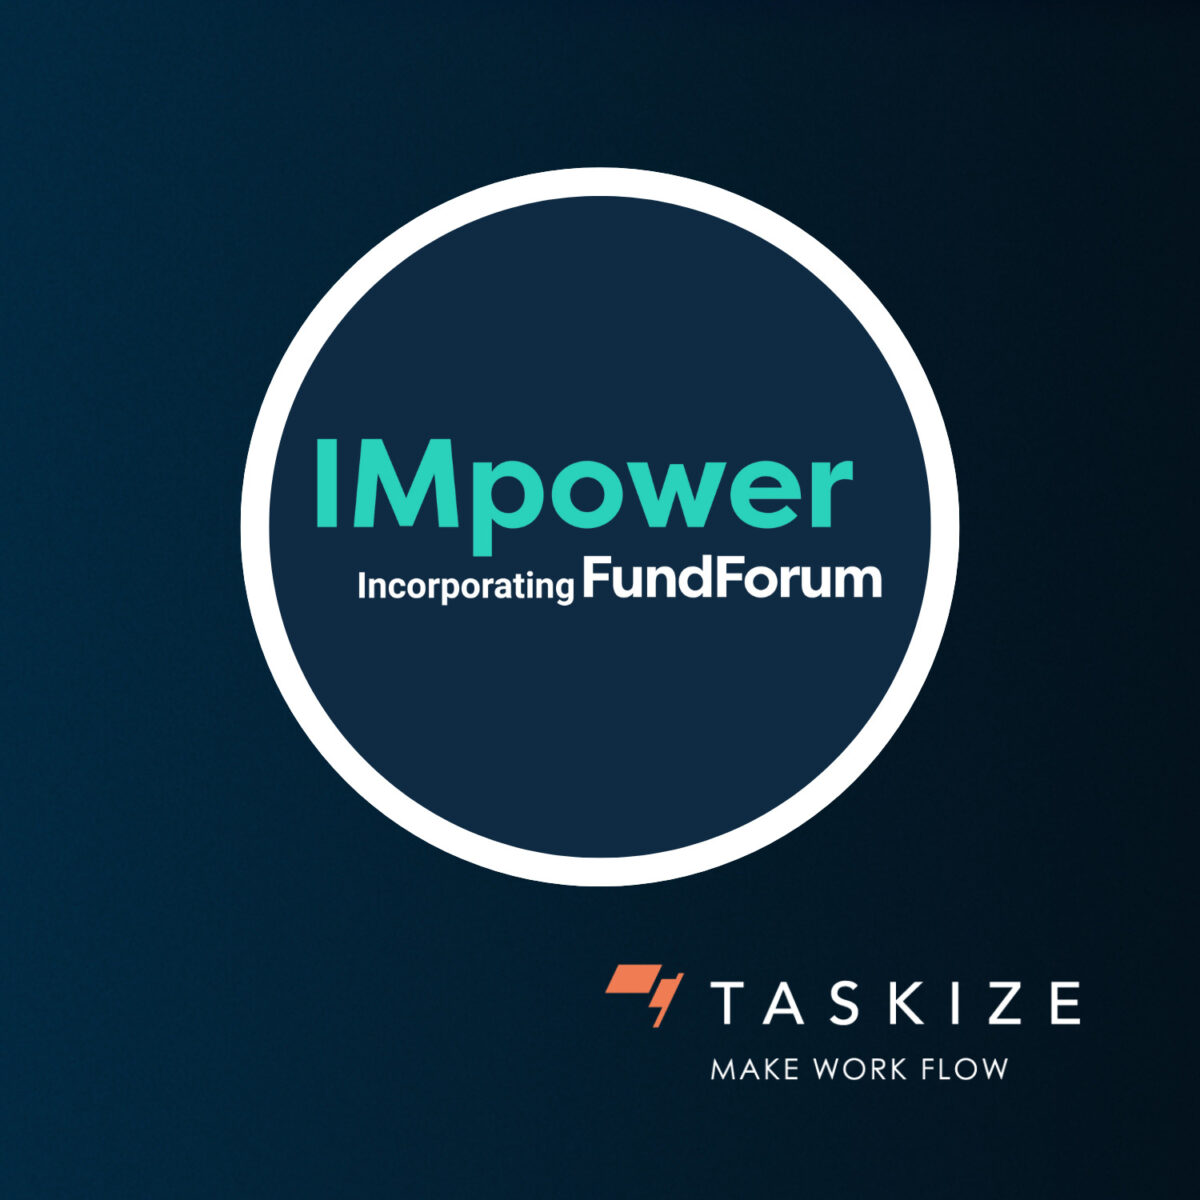 taskize-at-fund-forum-24